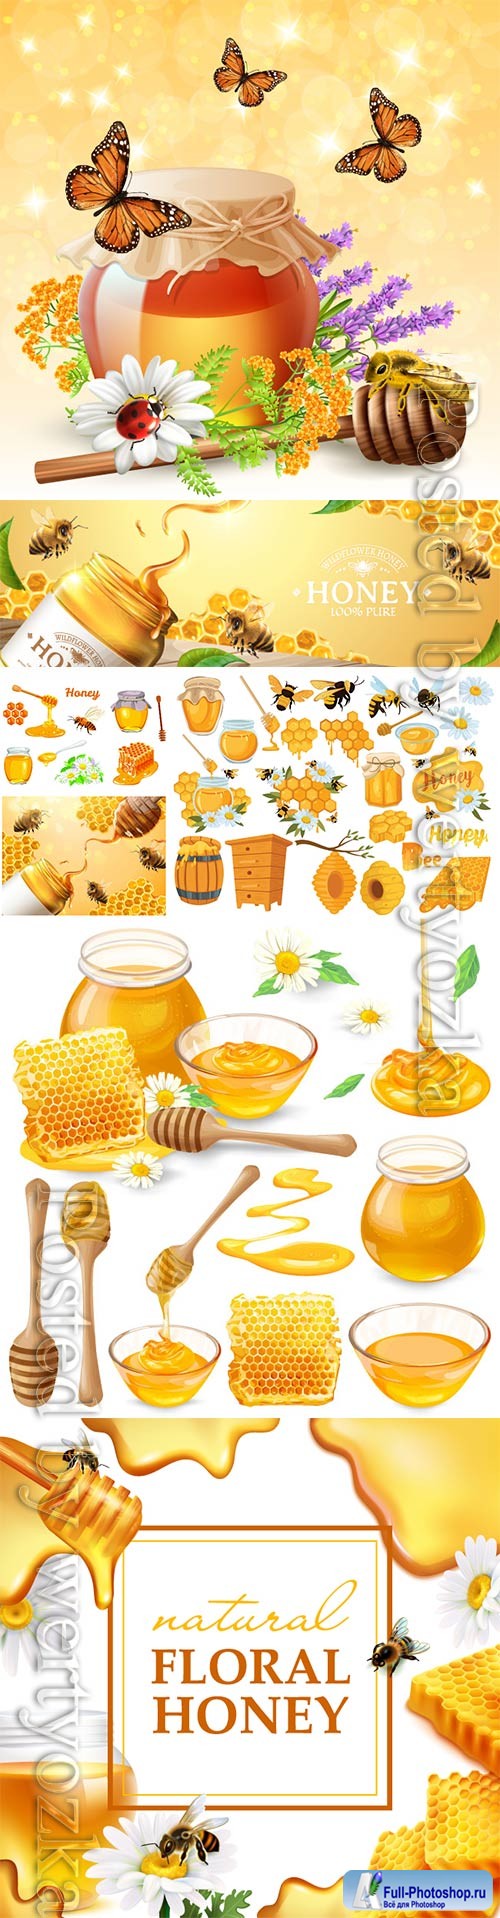 Honey set, honeycombs, bee, honey in glass jar, wooden honey dipper, honey in metal spoon and flowers